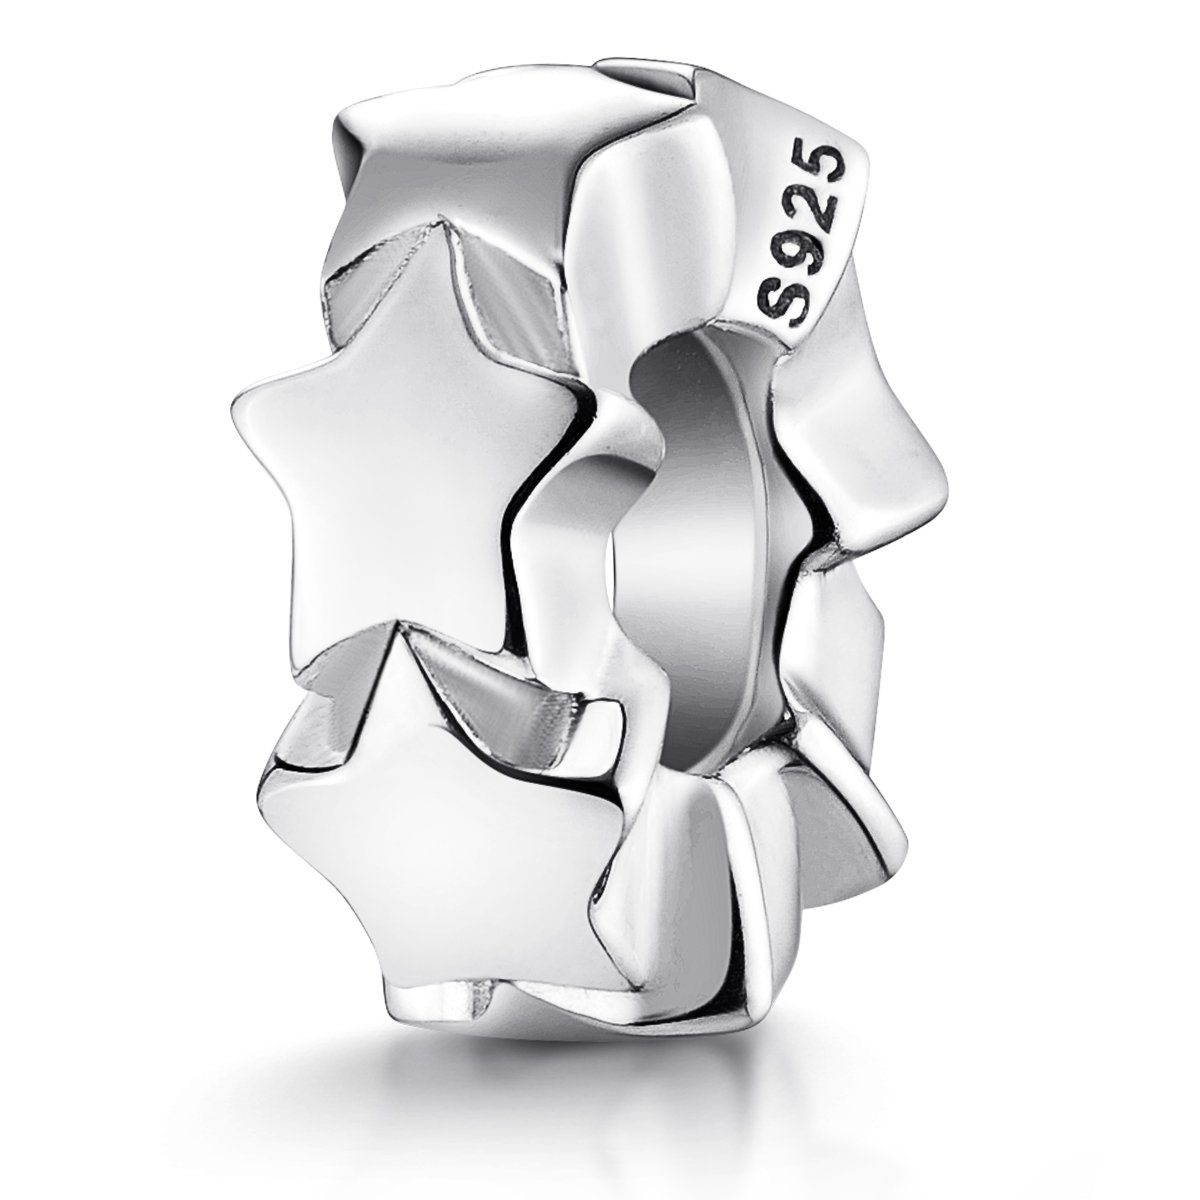 Materia Bead Silber Stopper Bead Sterne / Stars mit Gummiring 1152, 925 Sterling Silber